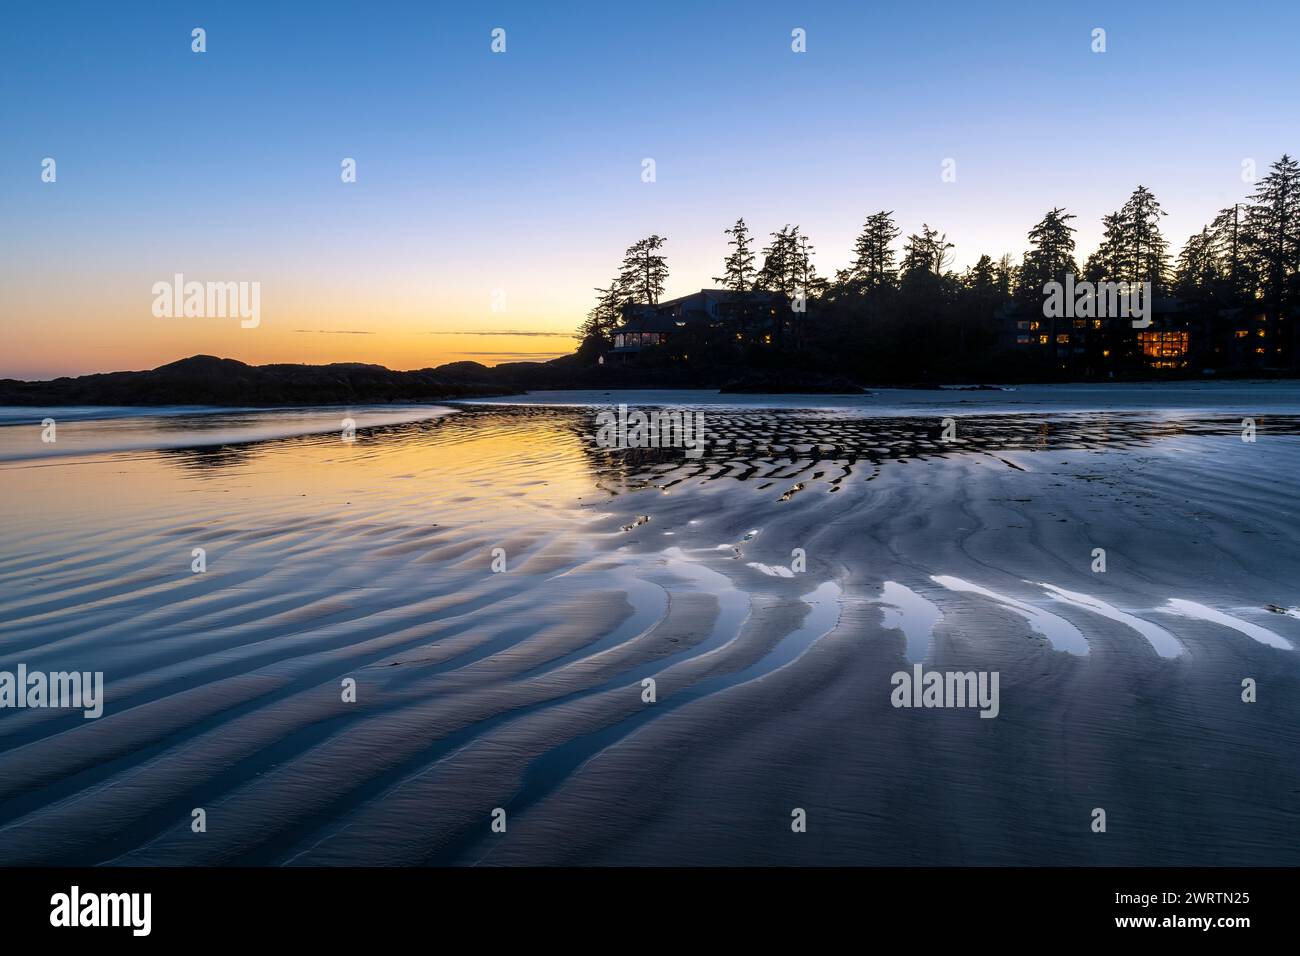 Chesterman Beach sunset, Tofino, British Columbia, Canada. Stock Photo